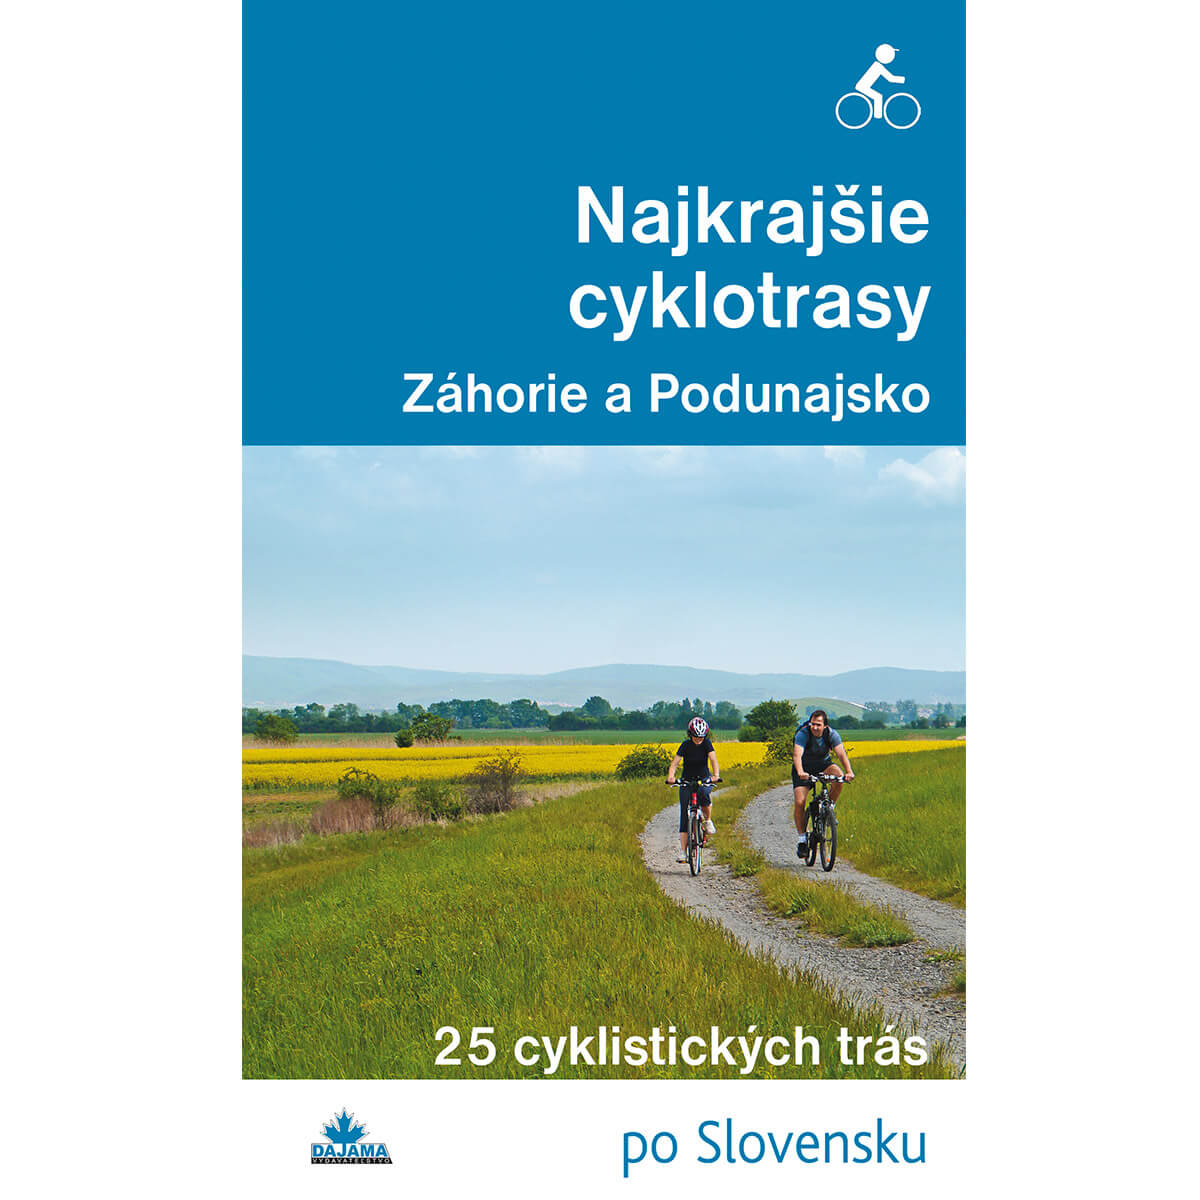 Kniha Najkrajšie cyklotrasy Záhorie a Podunajsko - 25 cyklistických trás po Slovensku z vydavateľstva Dajama